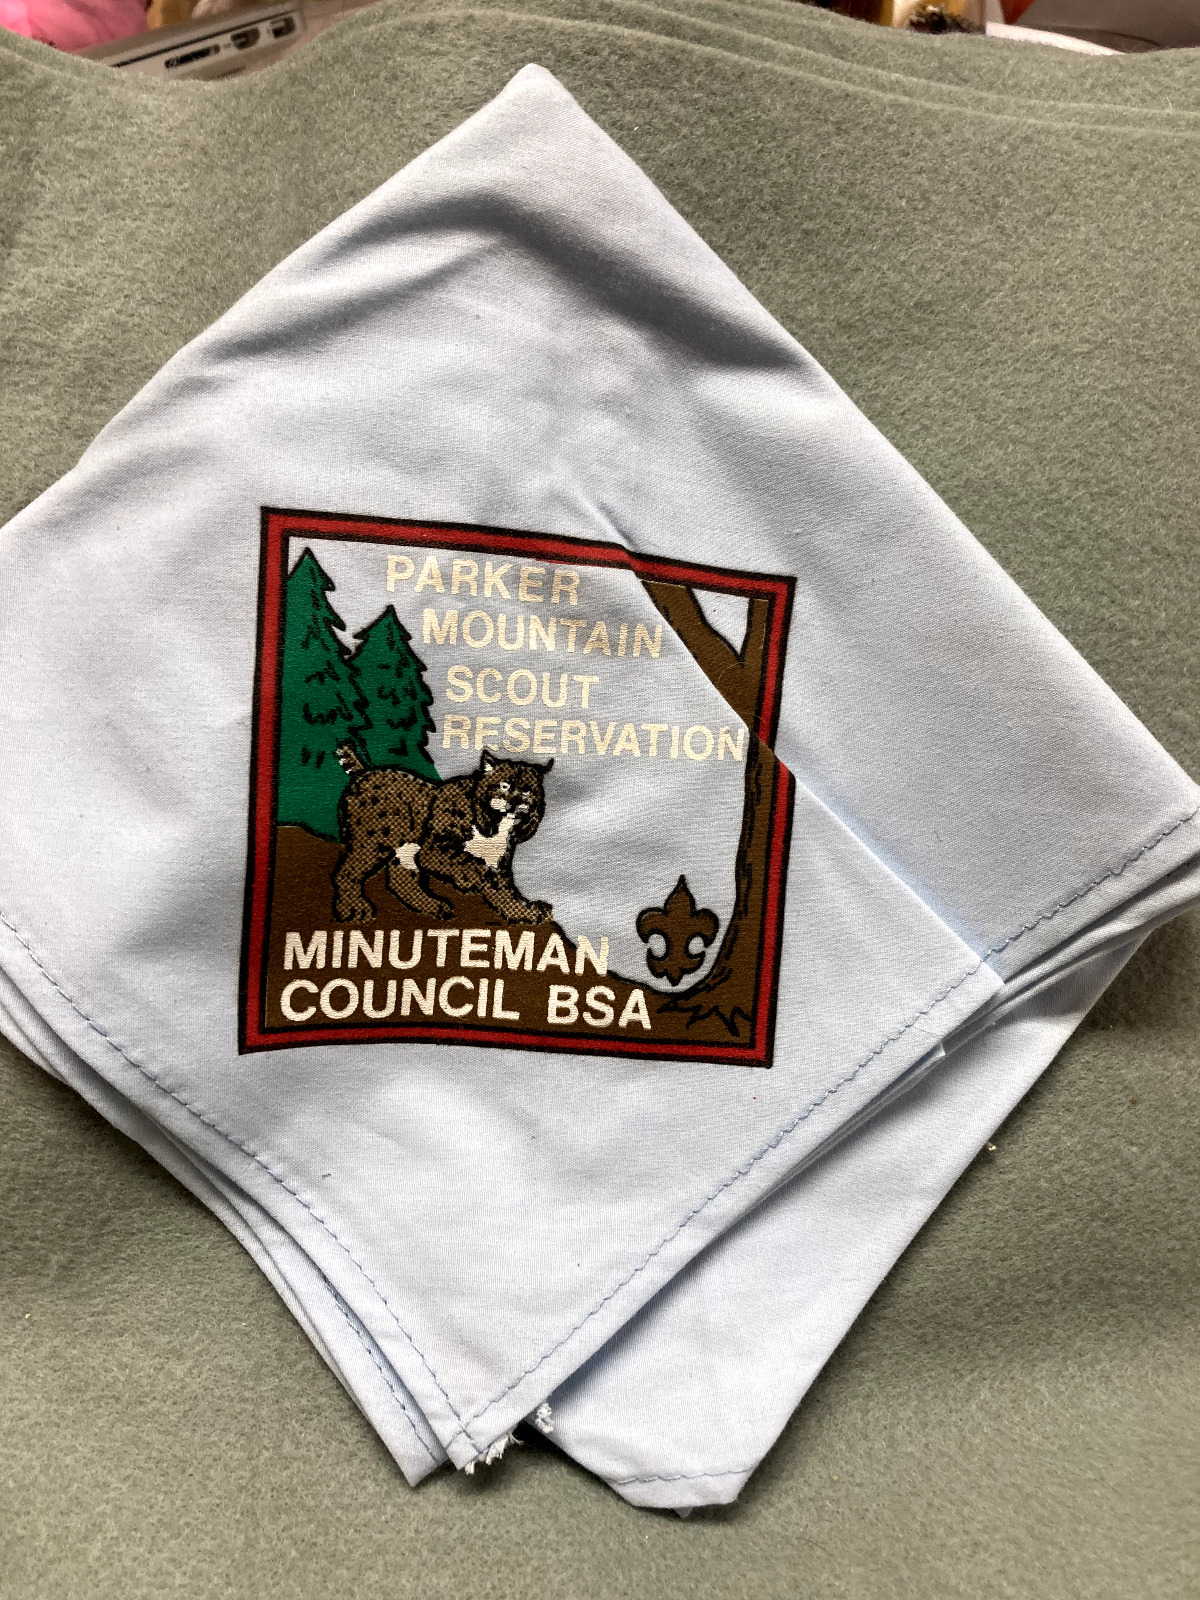 (124) Boy Scouts - Parker Mountain Scout Reservation - Minuteman Council necker